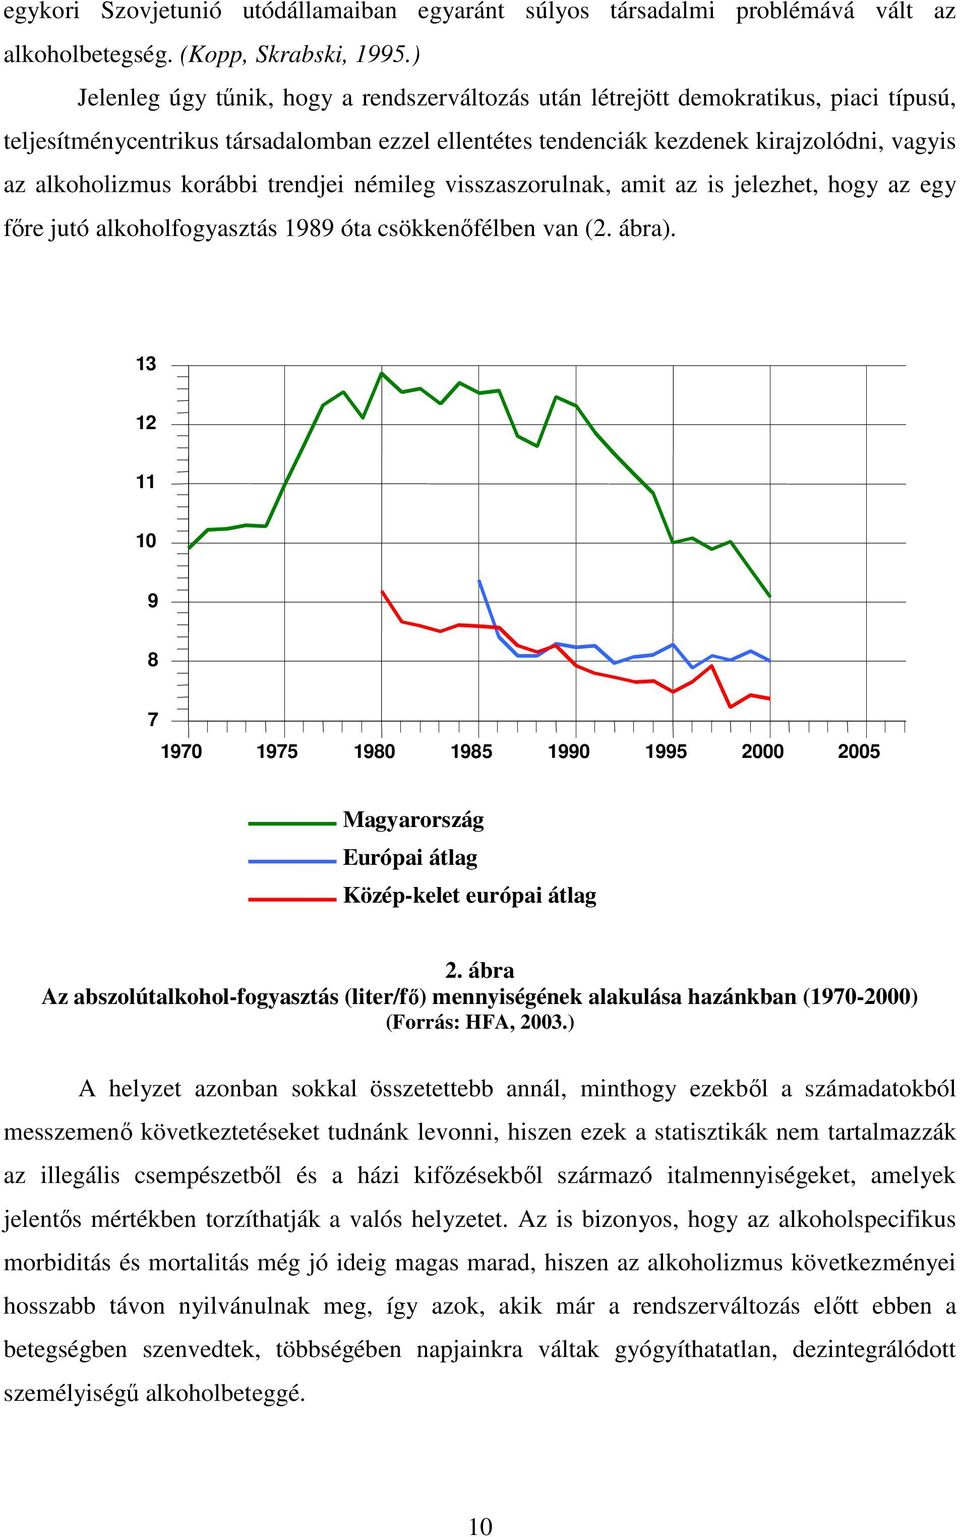 korábbi trendjei némileg visszaszorulnak, amit az is jelezhet, hogy az egy fıre jutó alkoholfogyasztás 1989 óta csökkenıfélben van (2. ábra).